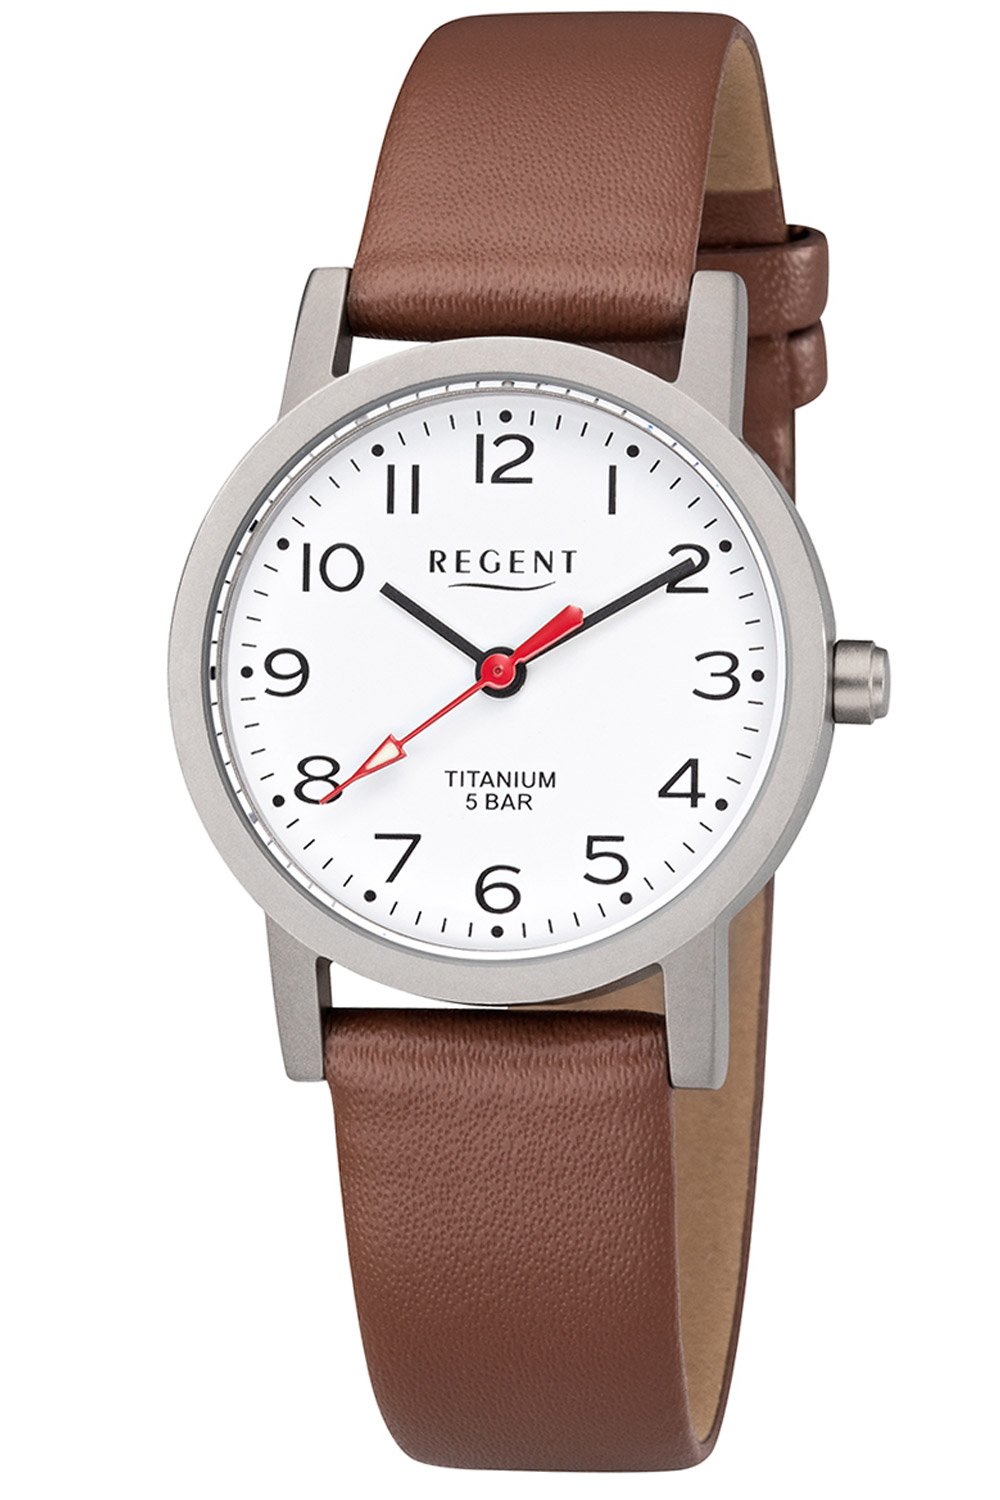 • Watches Regent uhrcenter Buy Titanium